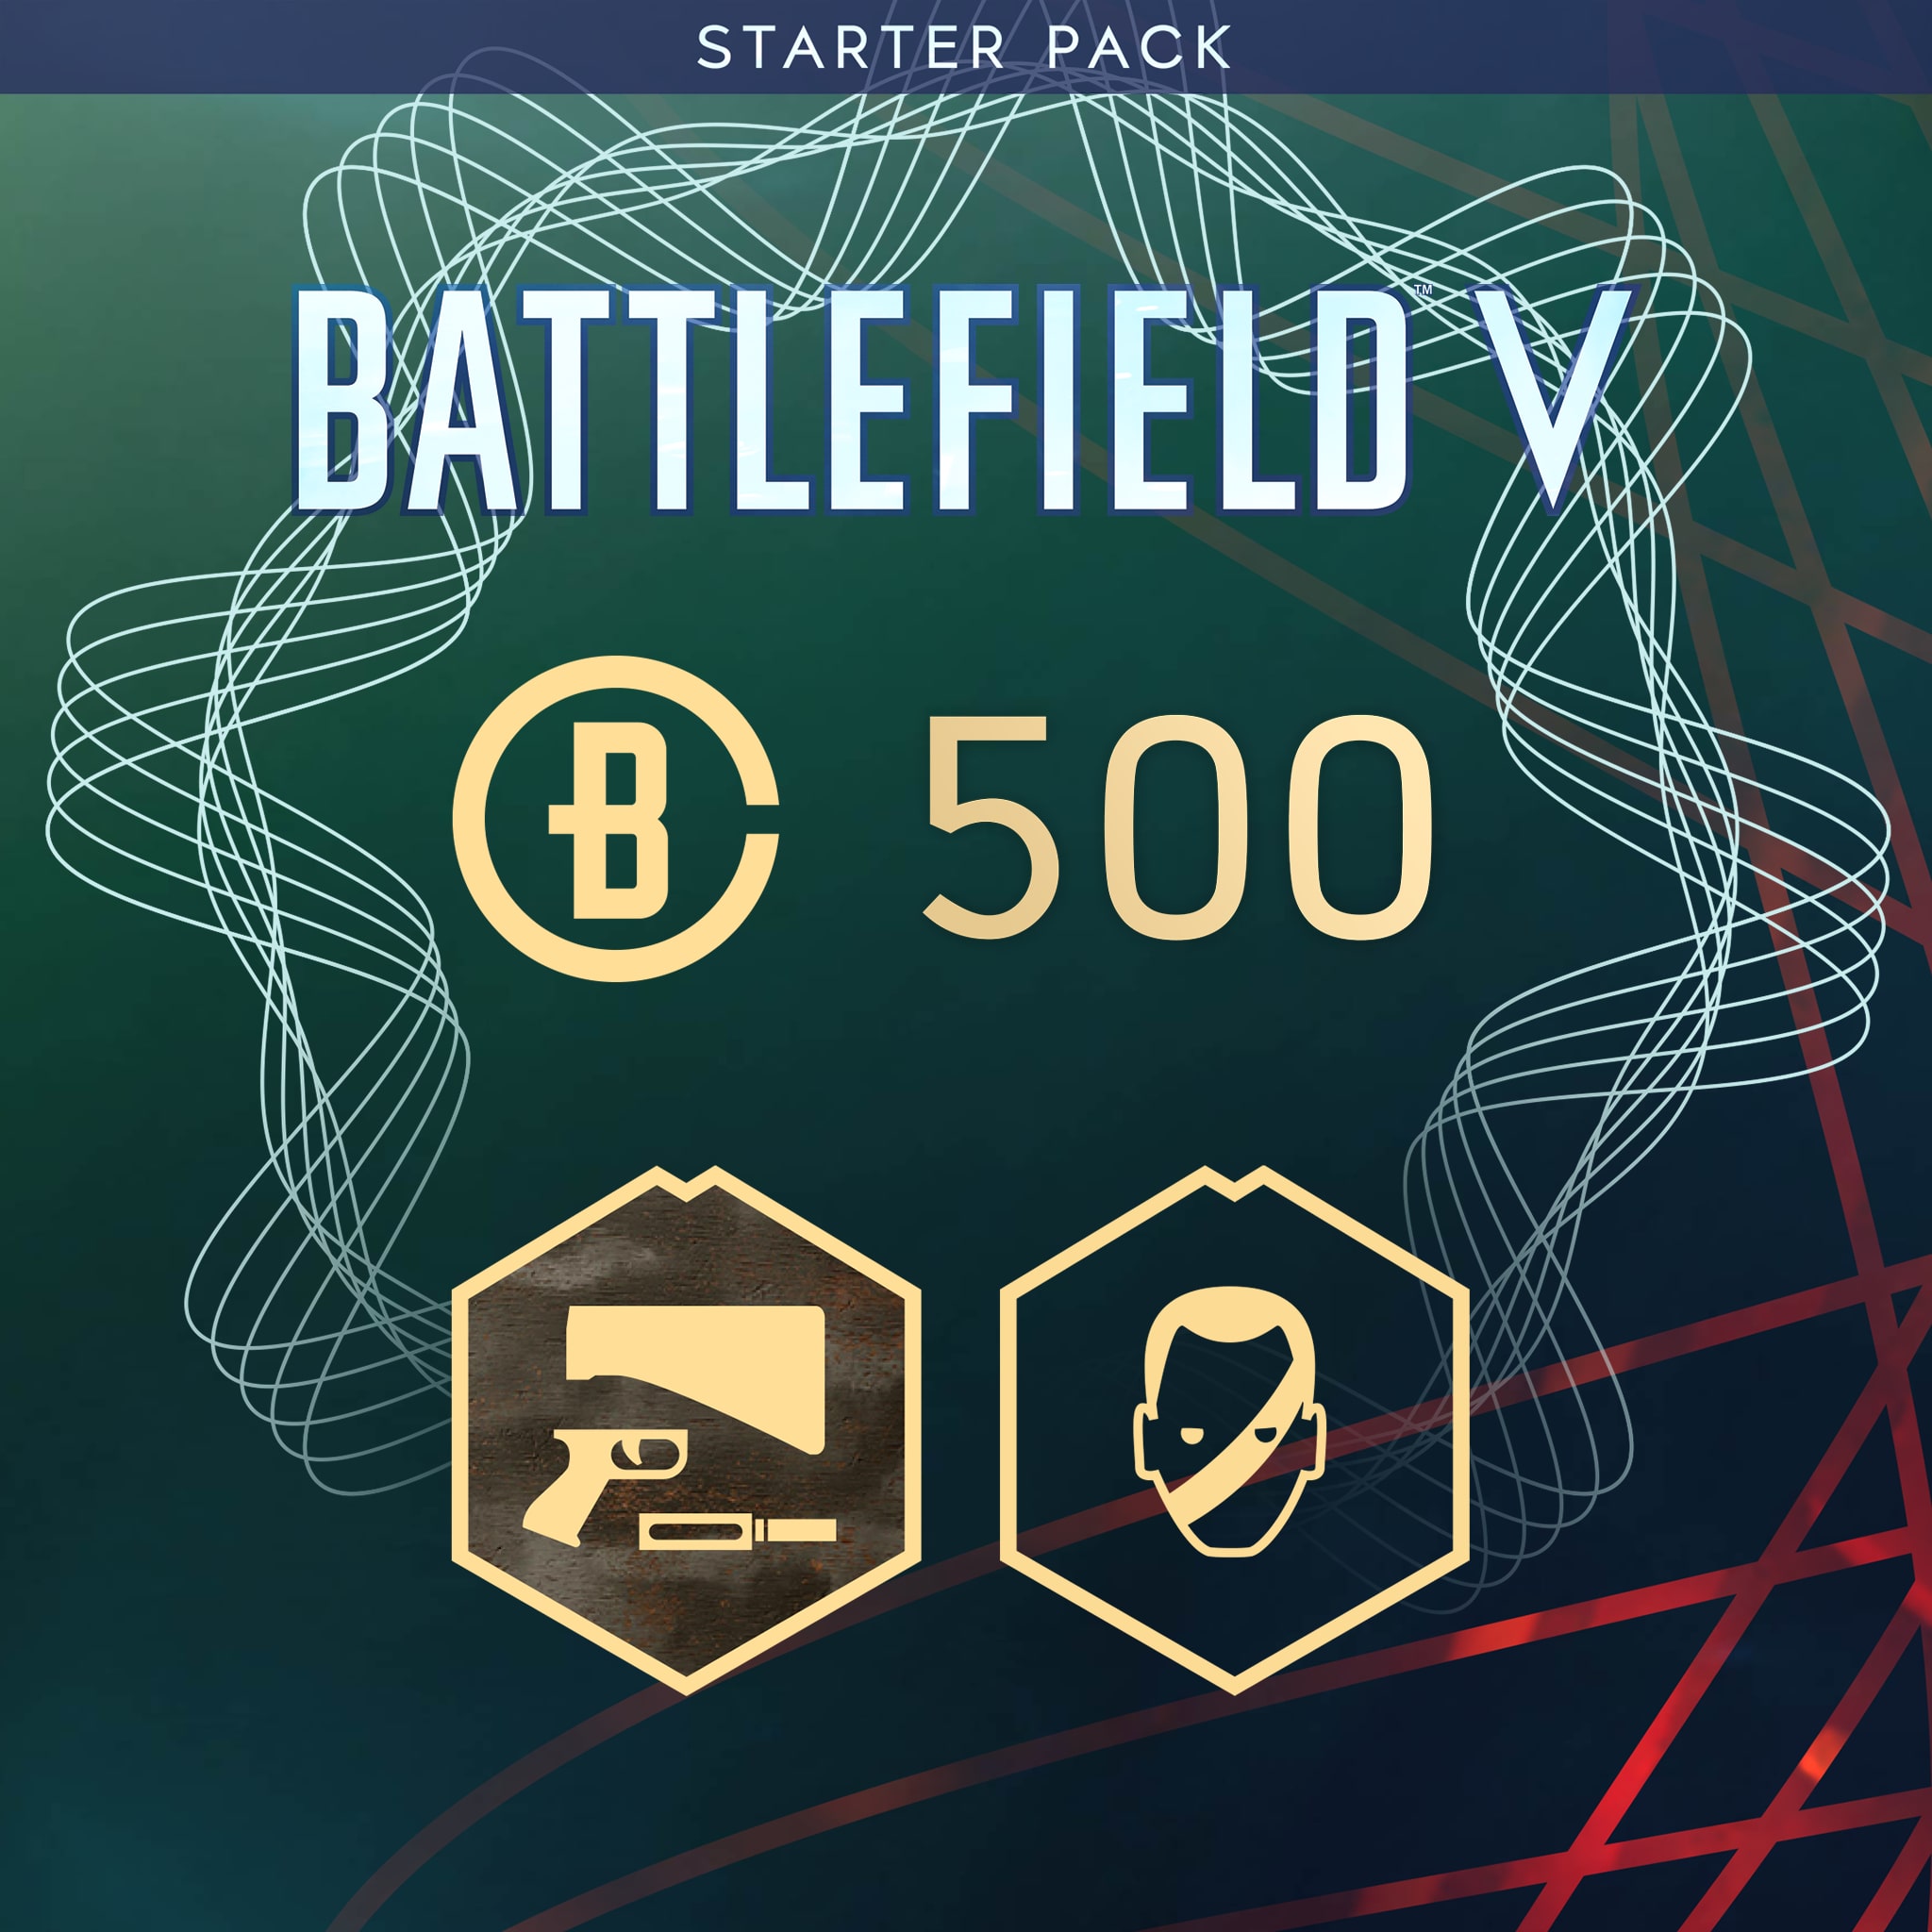 Pack de iniciación de Battlefield V